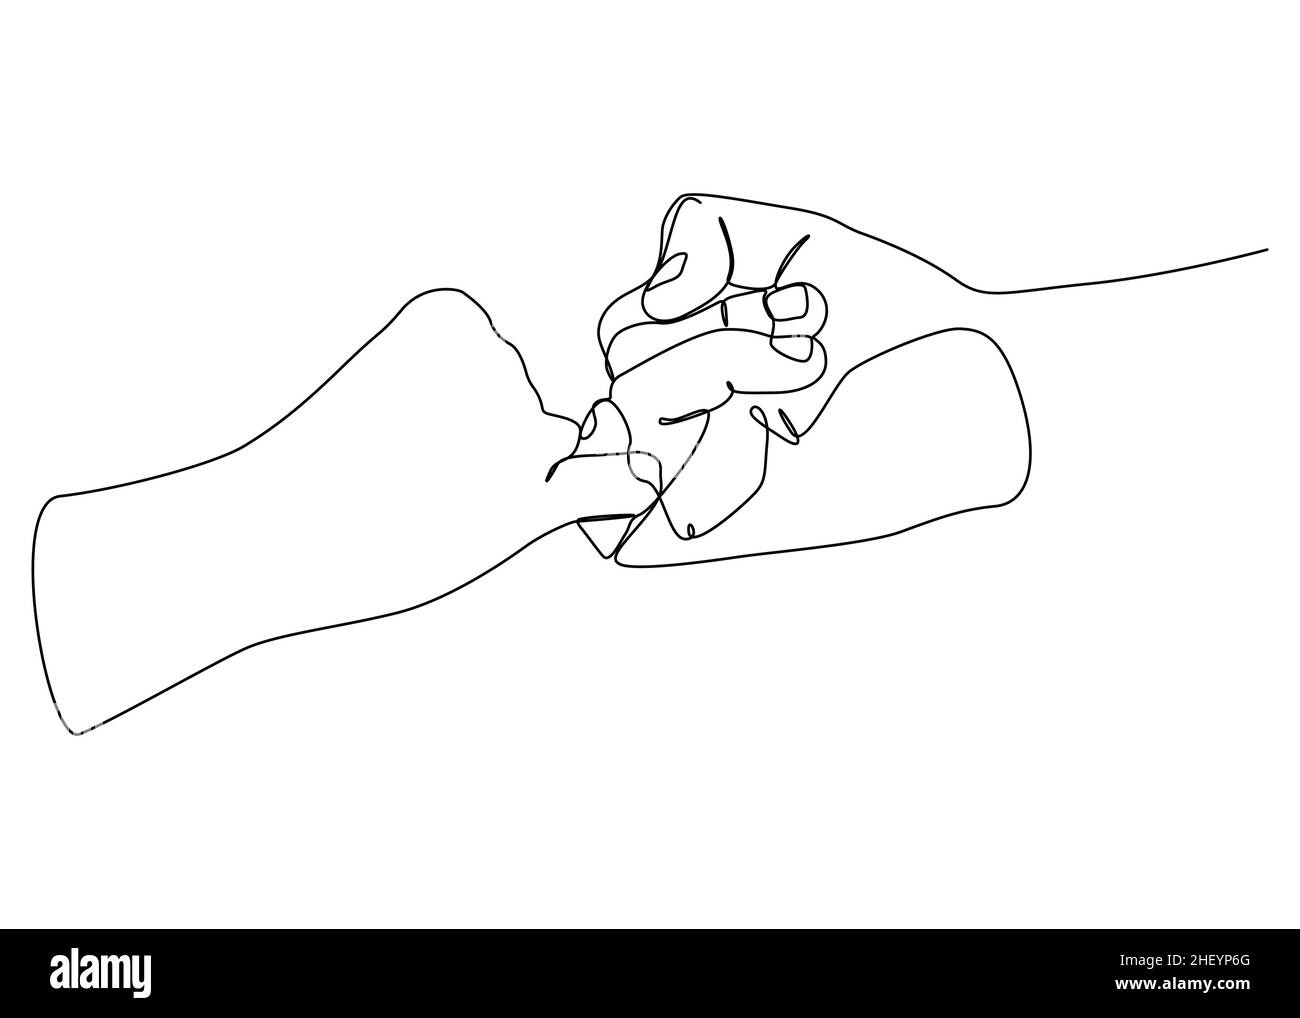 Vektor illustrierte Frau und Mann halten Hände zusammen mit kleinen Fingern. Einfache Linienkunst Konzept für Versprechen, pinkigen Schimpfe und Vertrauen. Stock Vektor